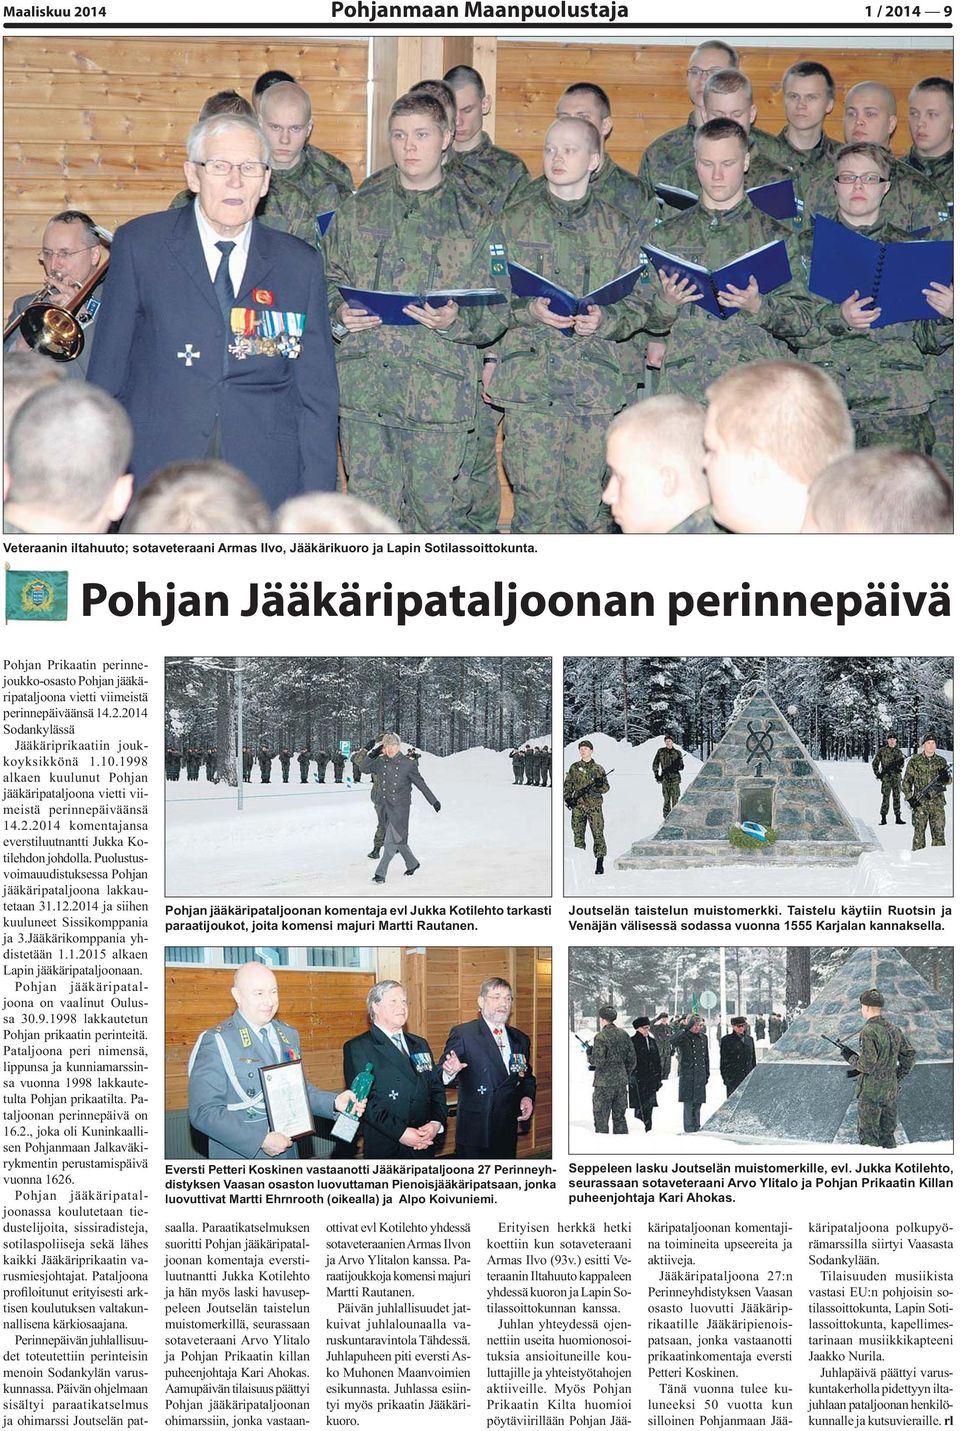 1998 alkaen kuulunut Pohjan jääkäripataljoona vietti viimeistä perinnepäiväänsä 14.2.2014 komentajansa everstiluutnantti Jukka Kotilehdon johdolla.